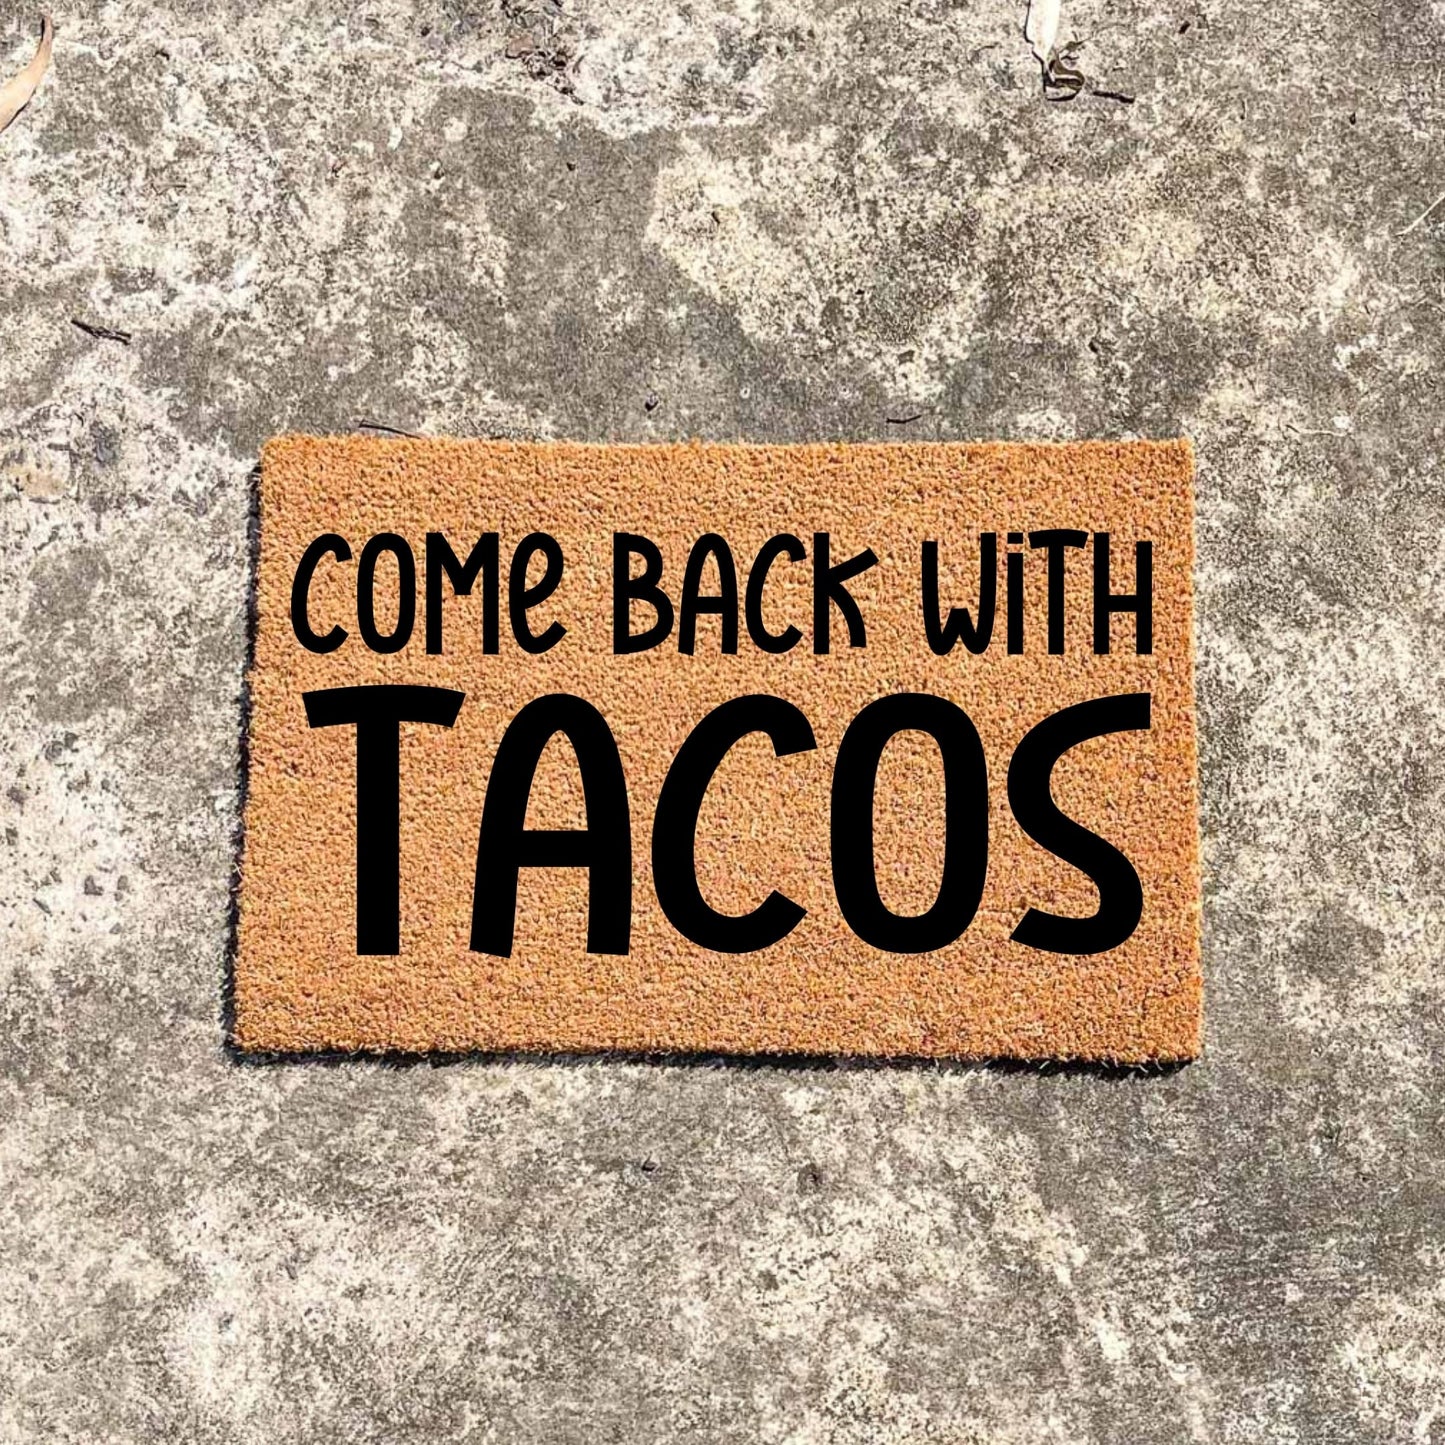 Come back with tacos doormat, unique doormat, custom doormat, personalised doormat